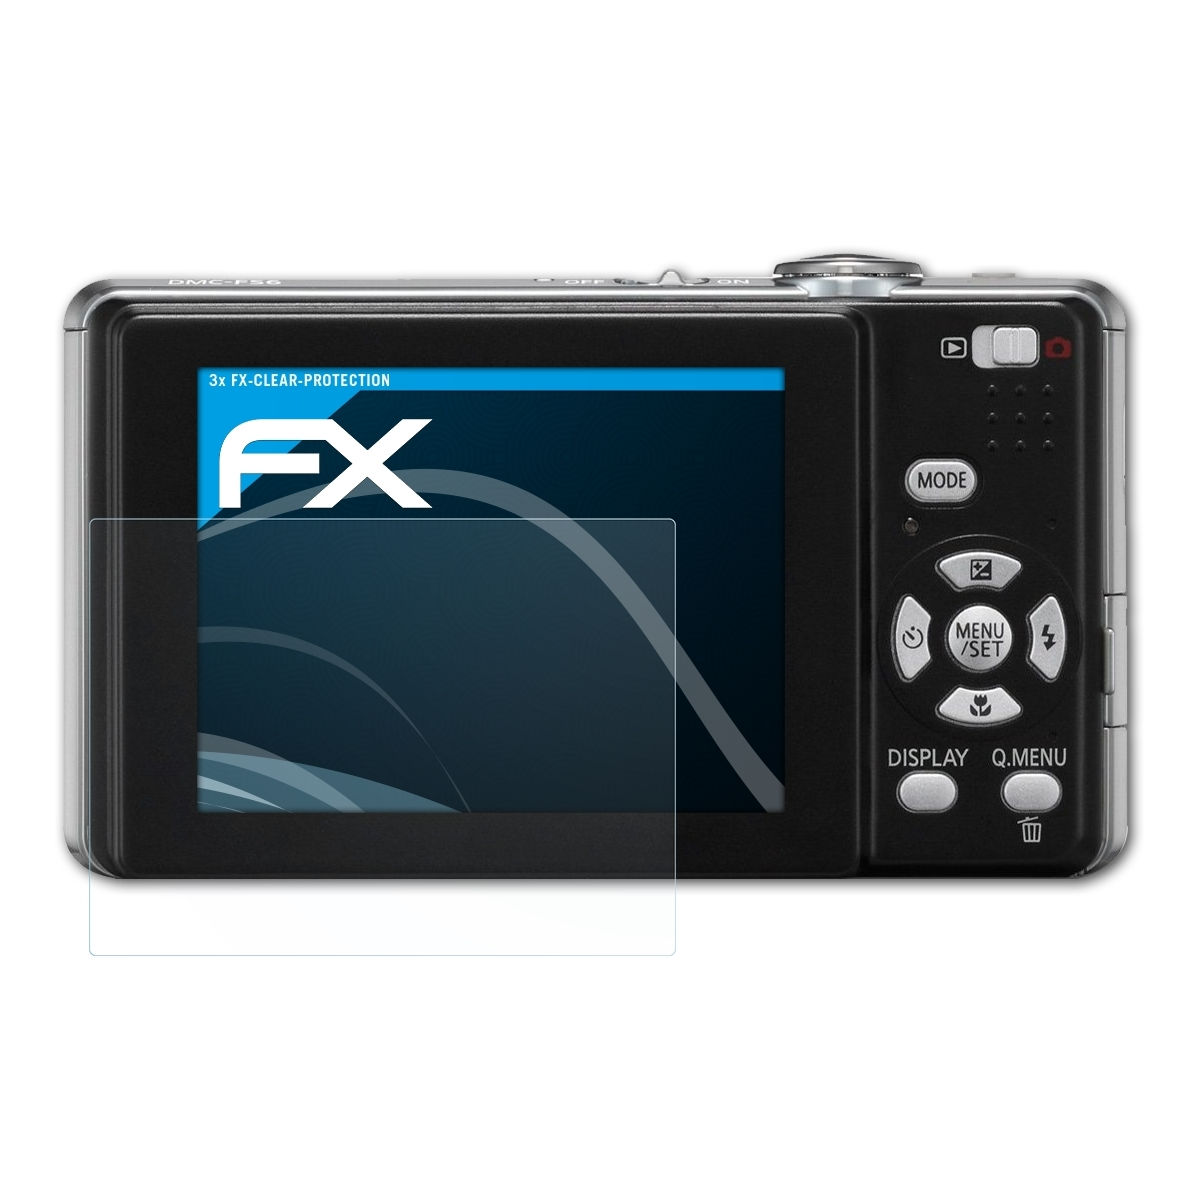 Panasonic FX-Clear 3x Lumix Displayschutz(für ATFOLIX DMC-FS6)